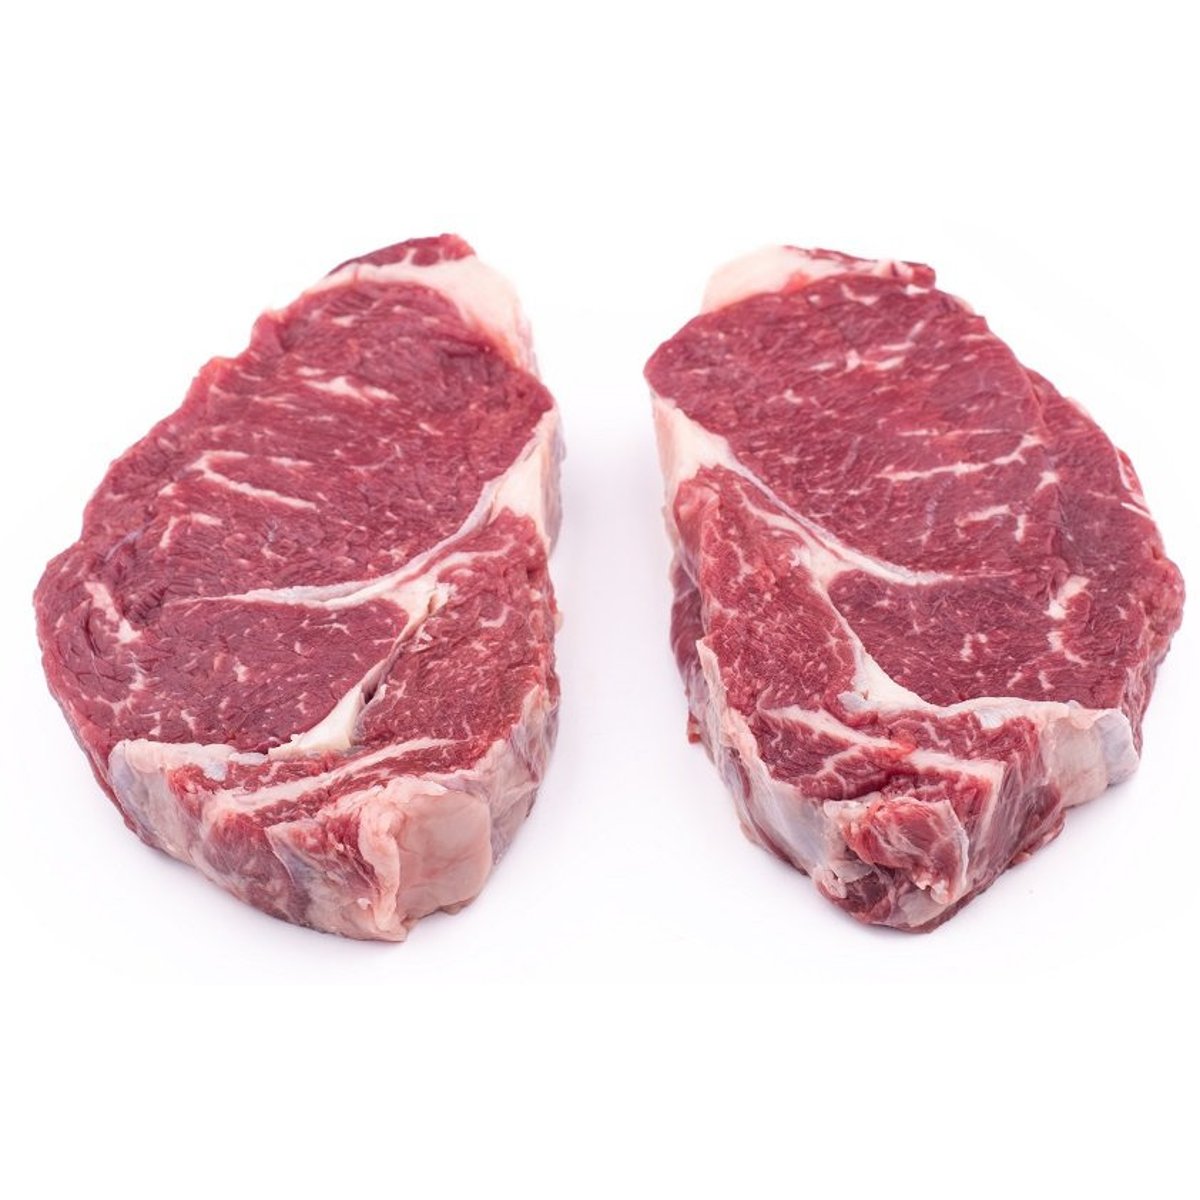 MeatPoint BIO Roštěná plátky na steak